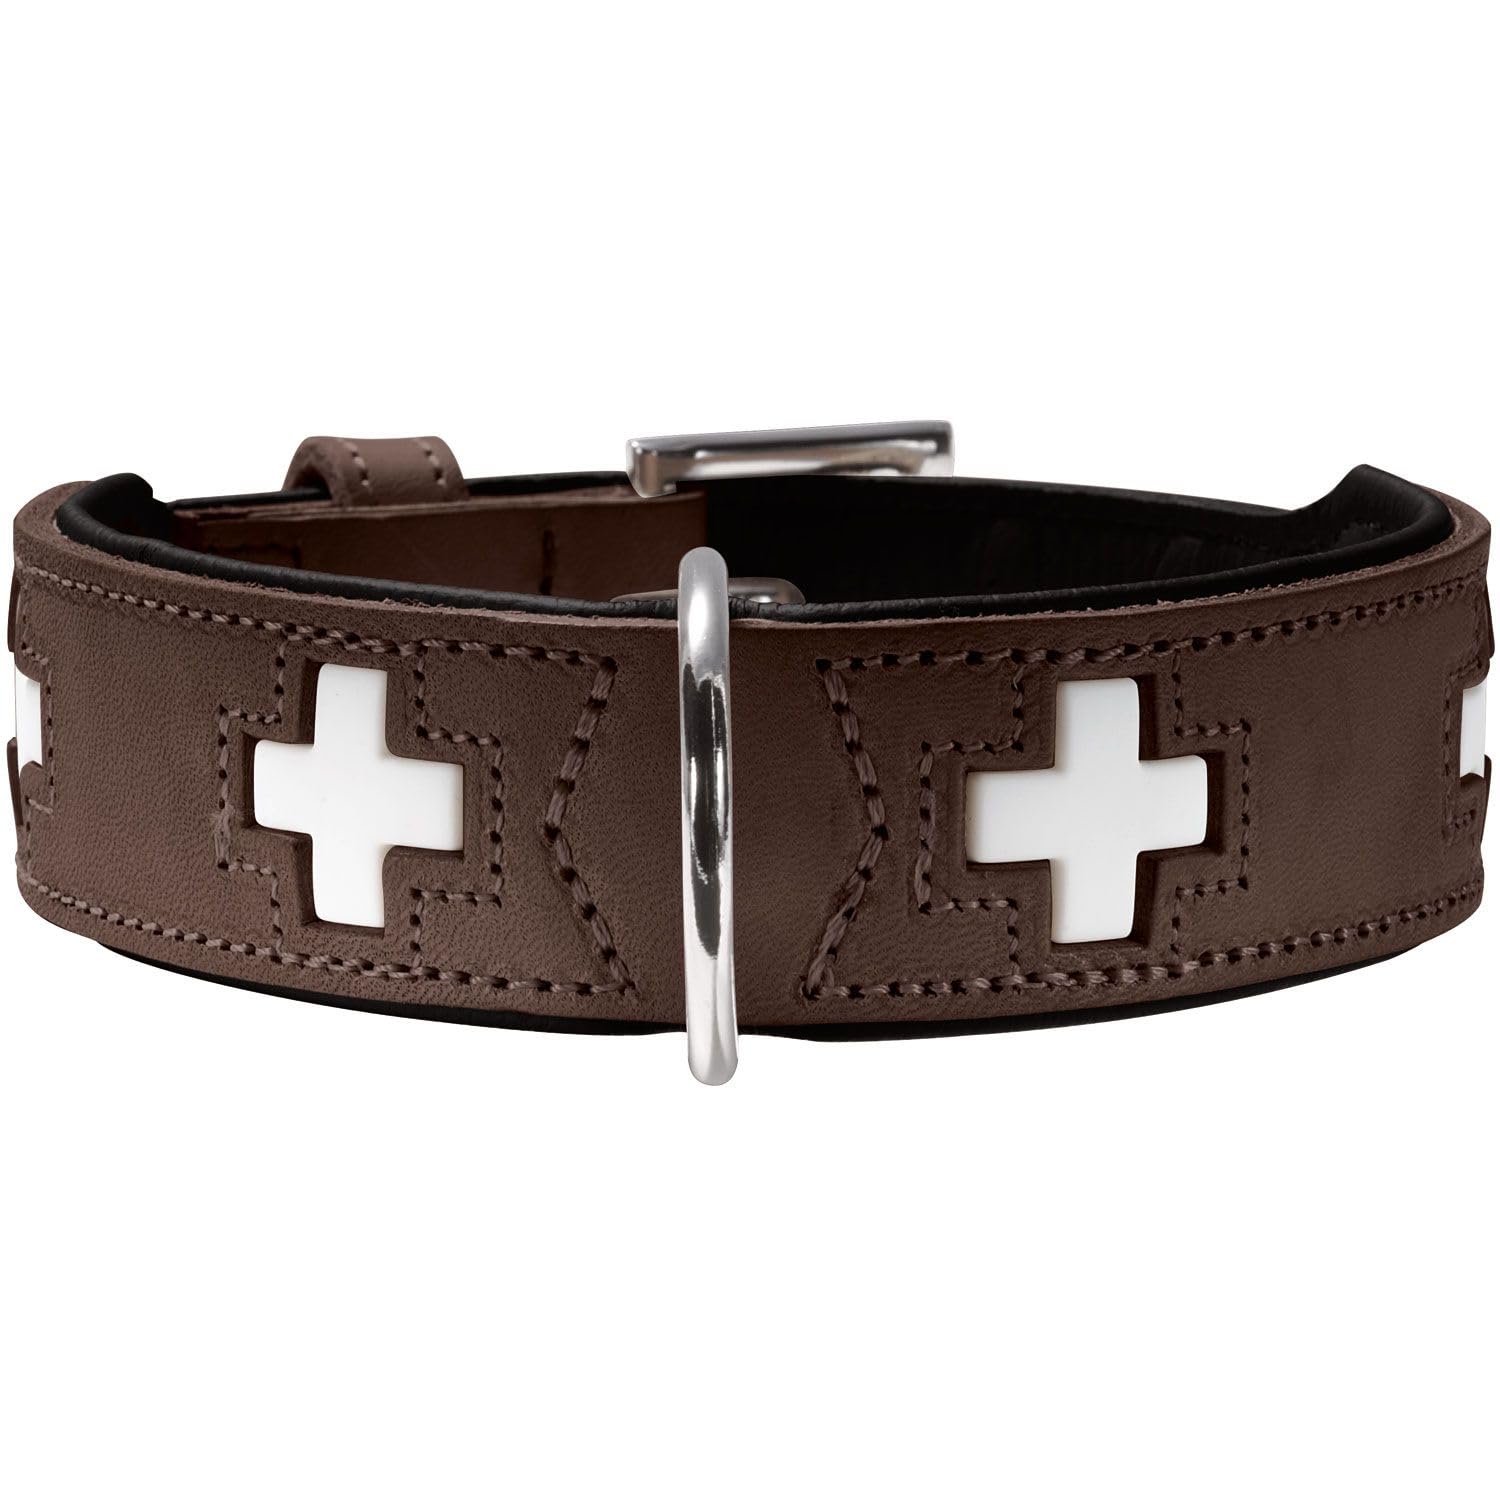 HUNTER SWISS Hundehalsband, Leder, hochwertig, schweizer Kreuz, 37 (XS-S), braun/schwarz